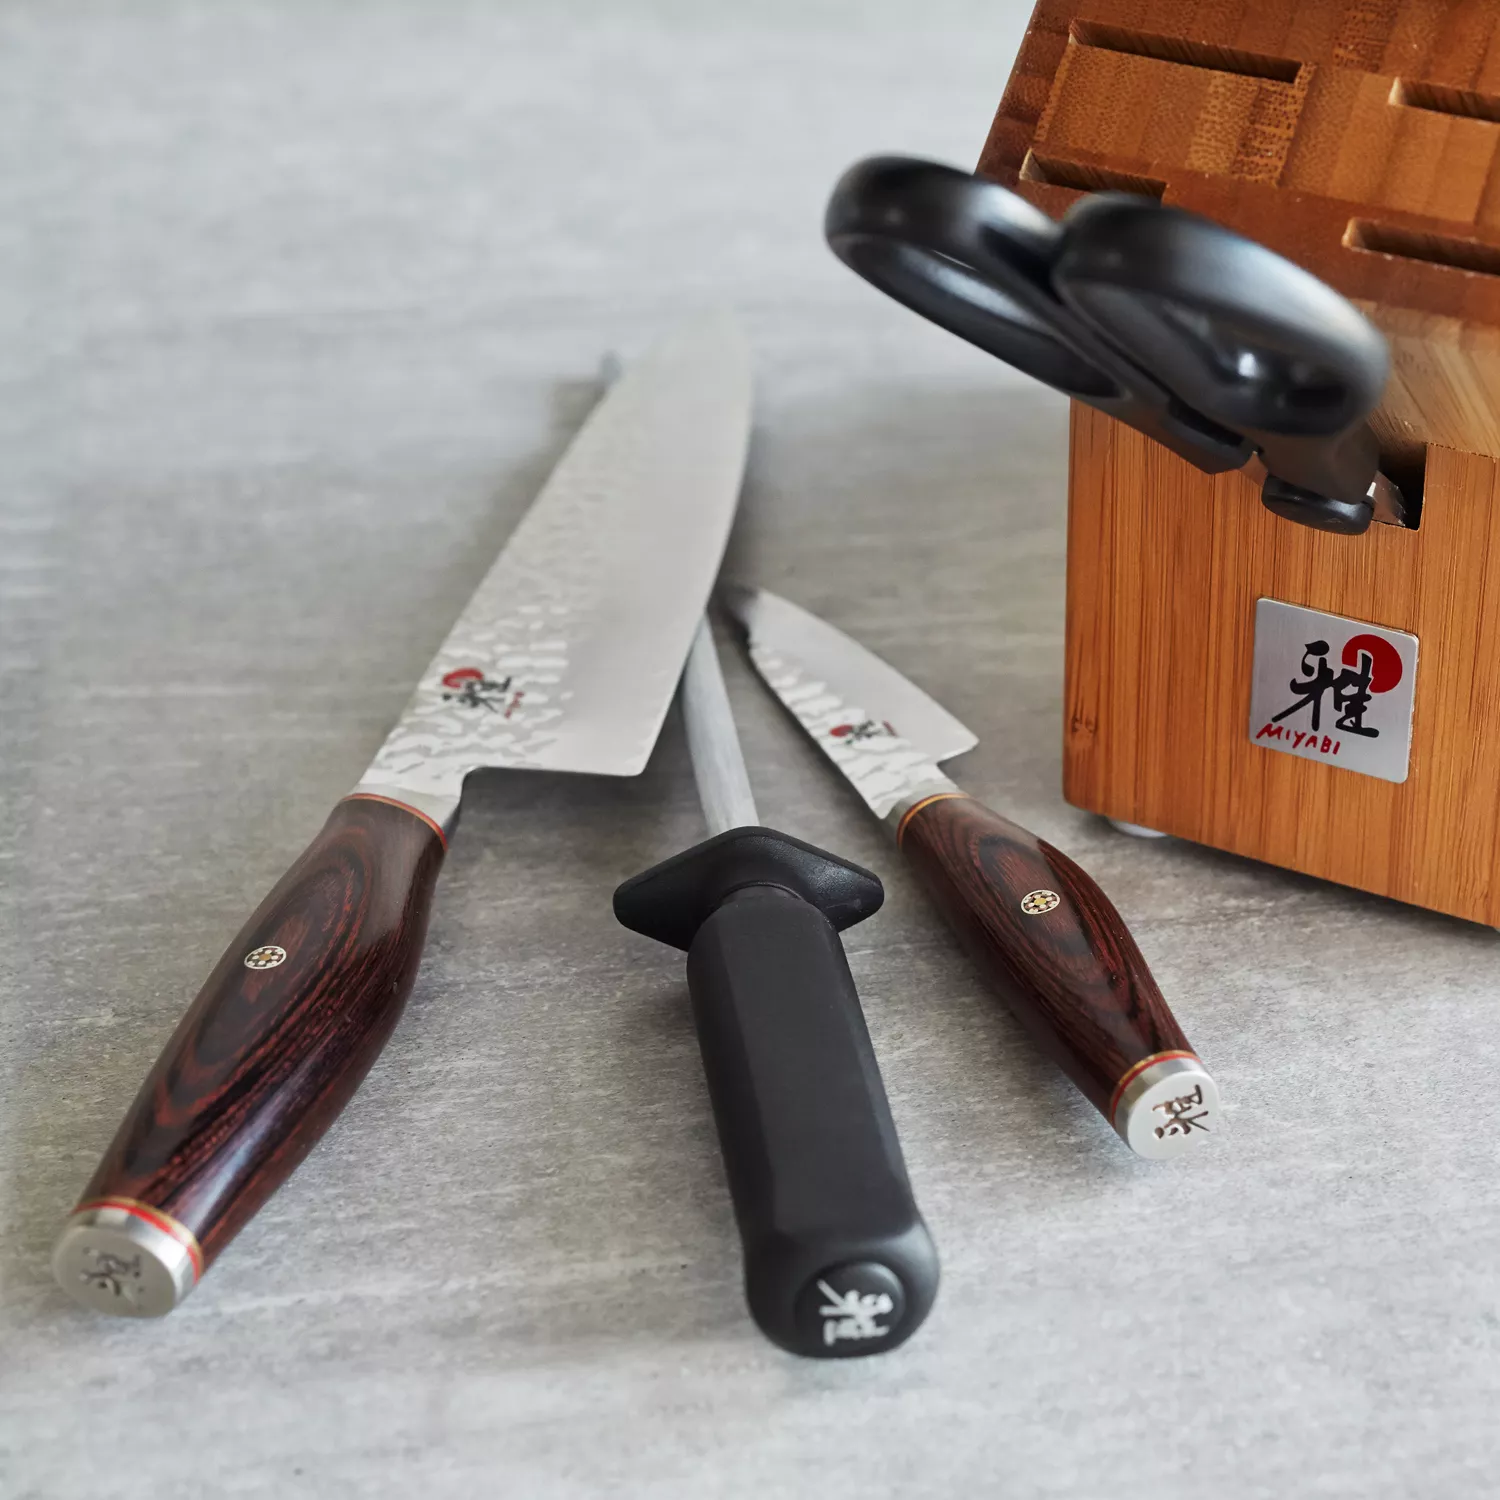 Miyabi Artisan Steak Knives, Set of 4